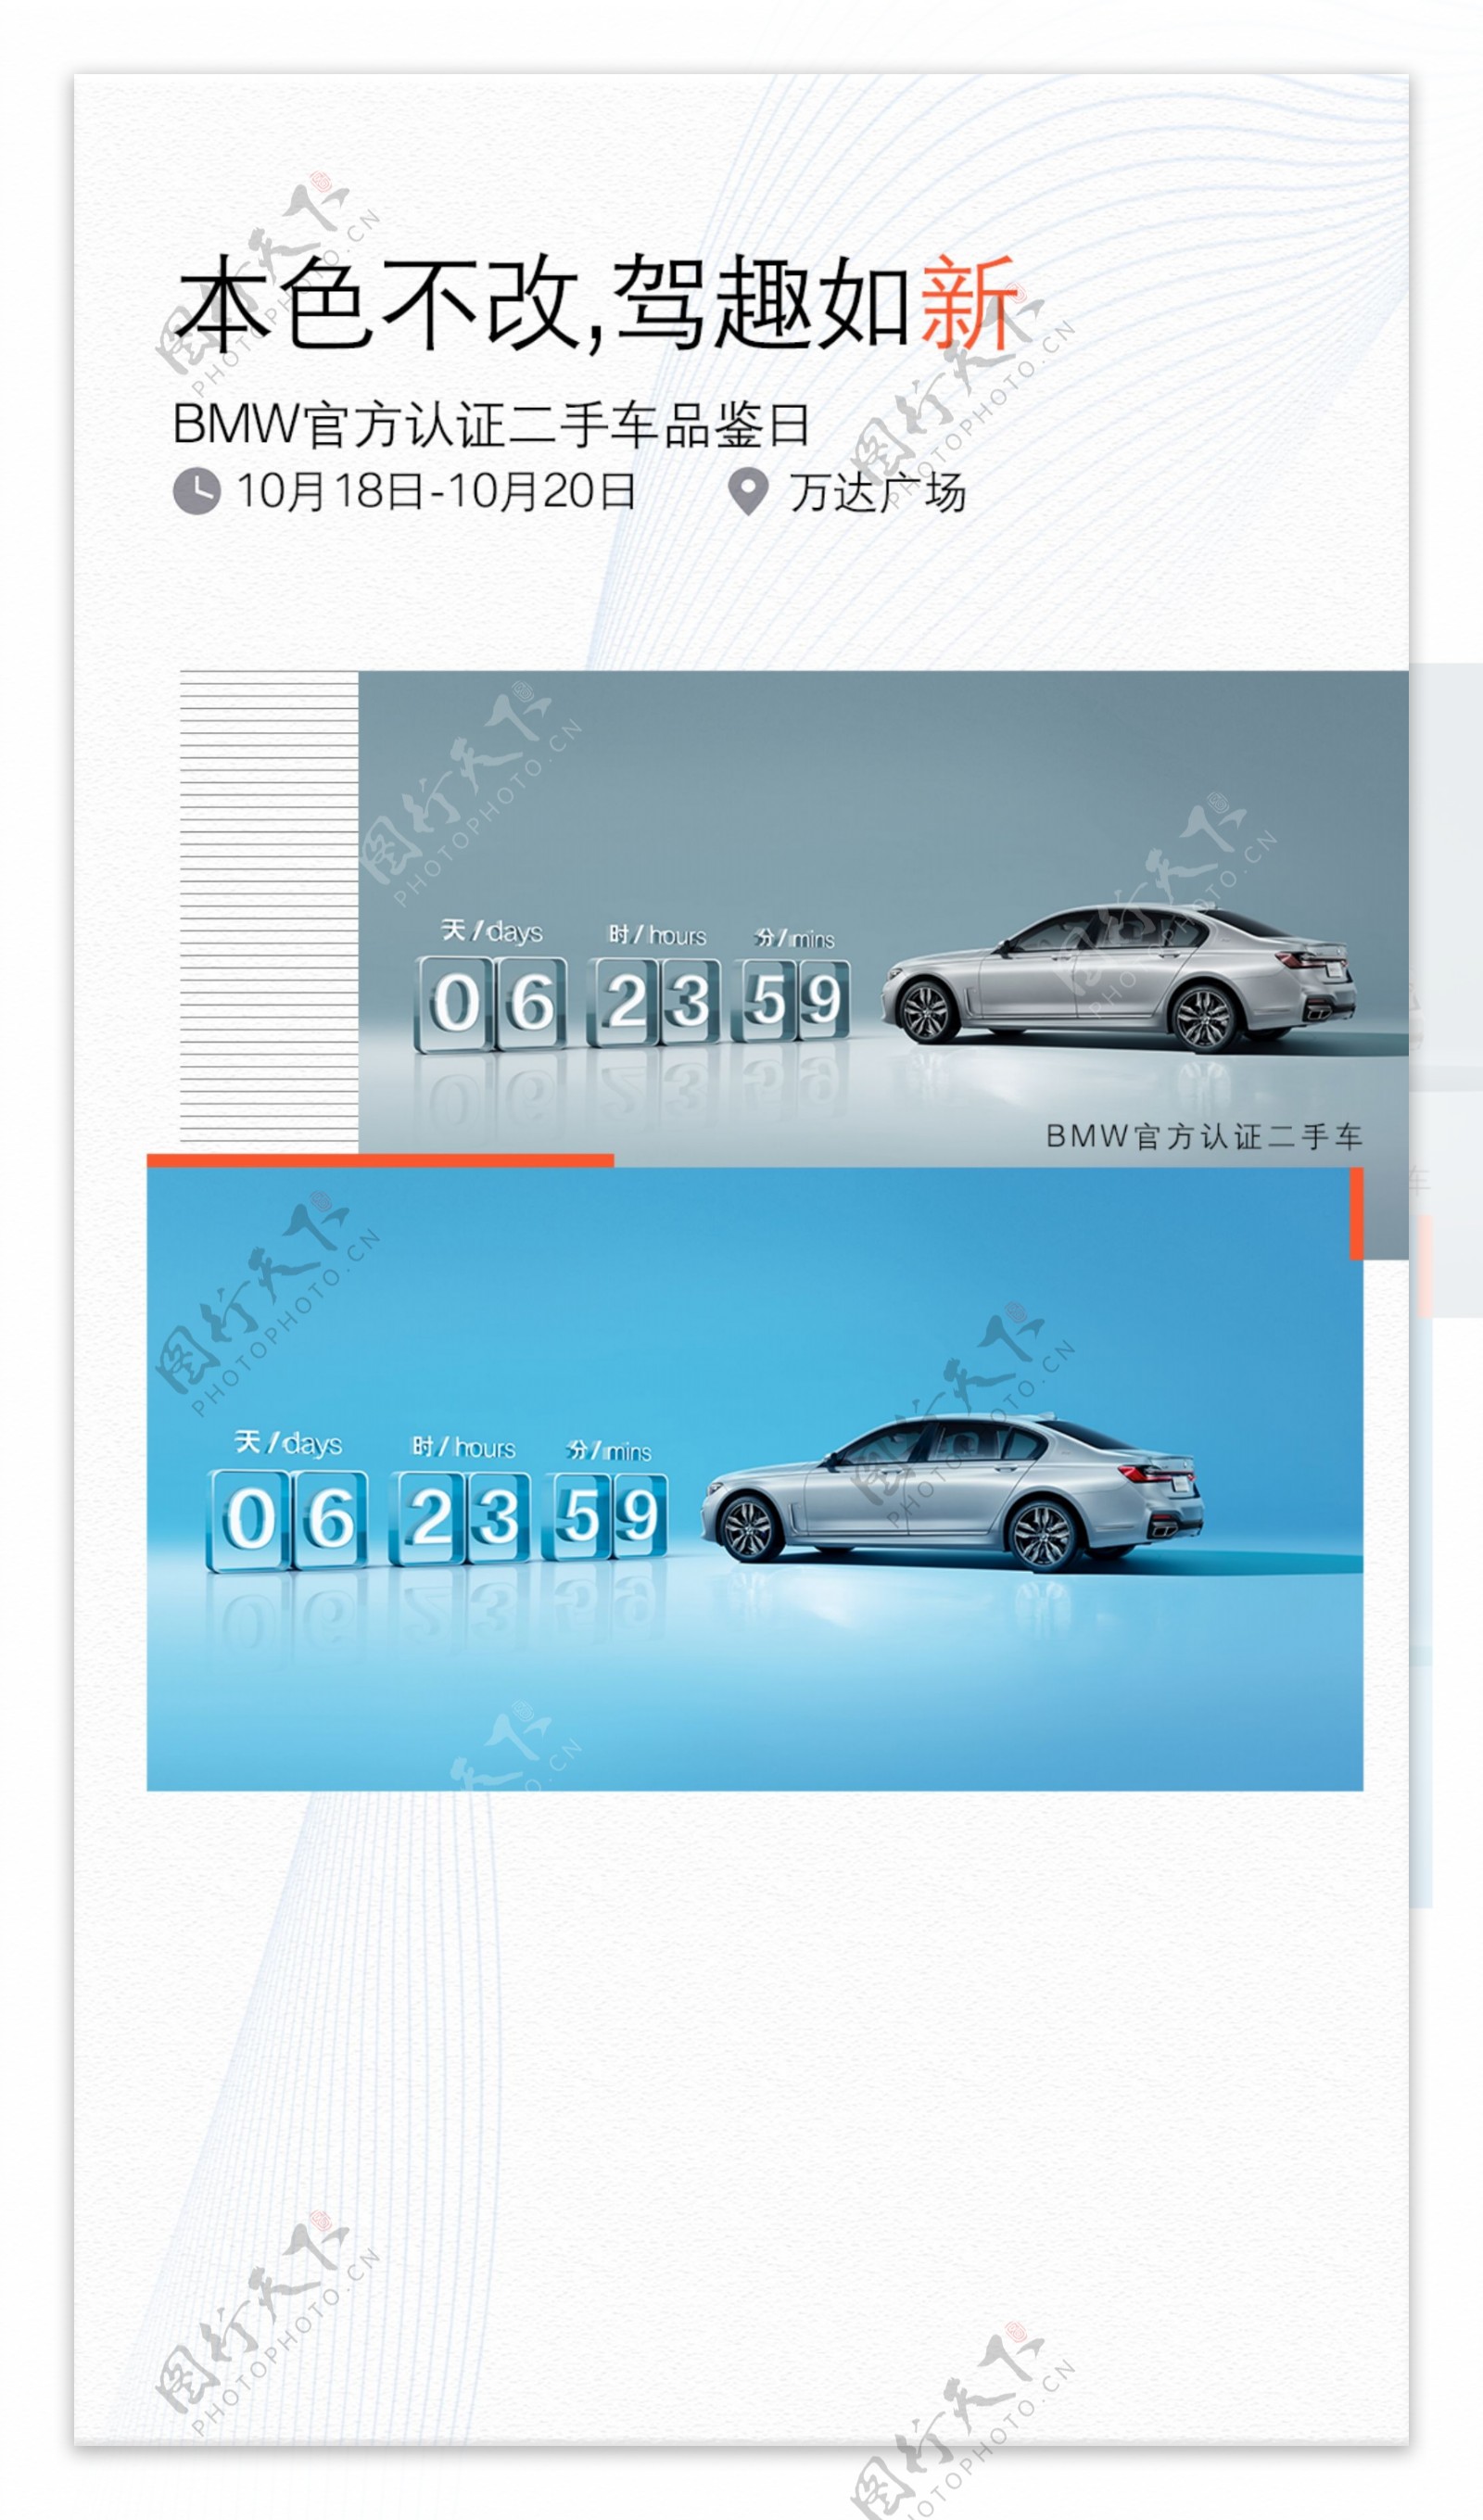 BMW官方认证二手车活动海报